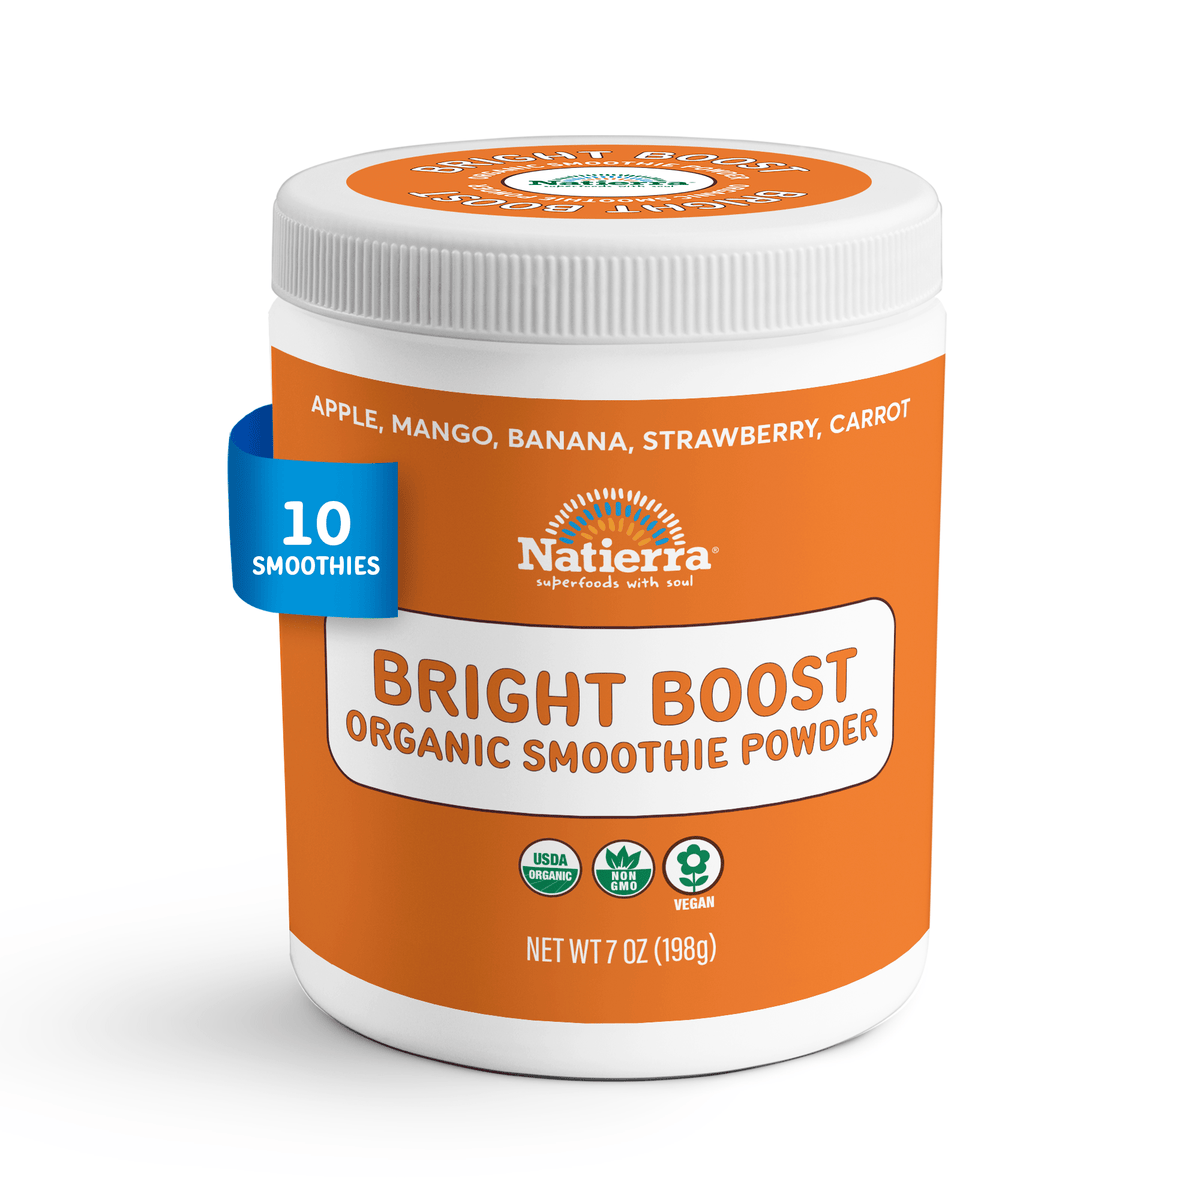 Natierra Bright Boost Organic Smoothie 7oz Jar 